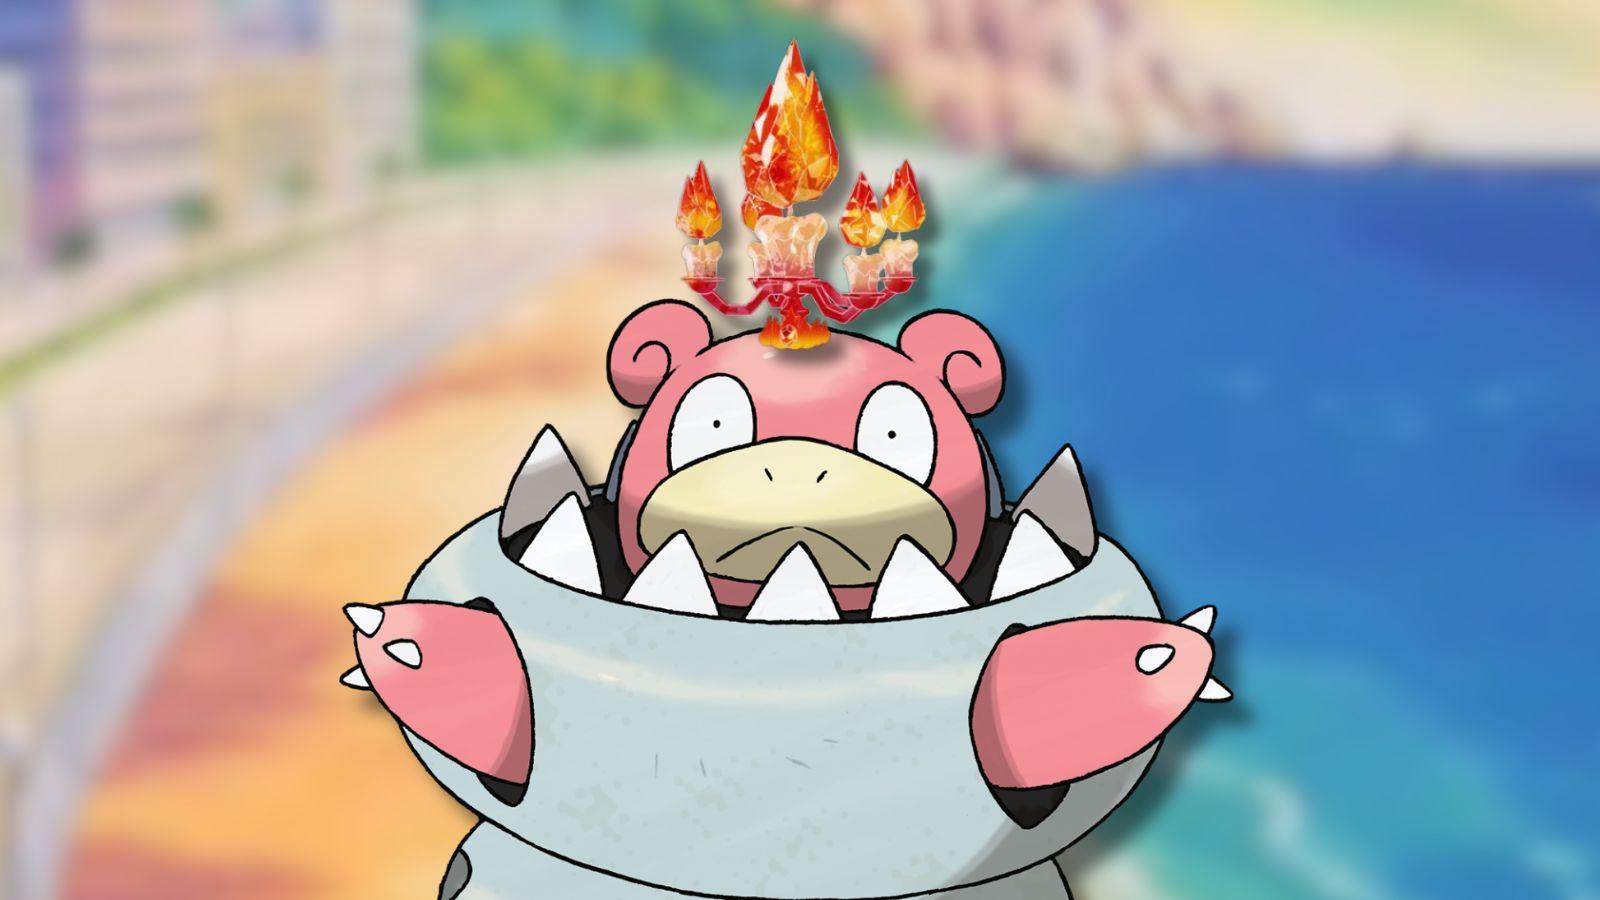 Flame Tera crown Mega Slowbro with Pokemon beach background.